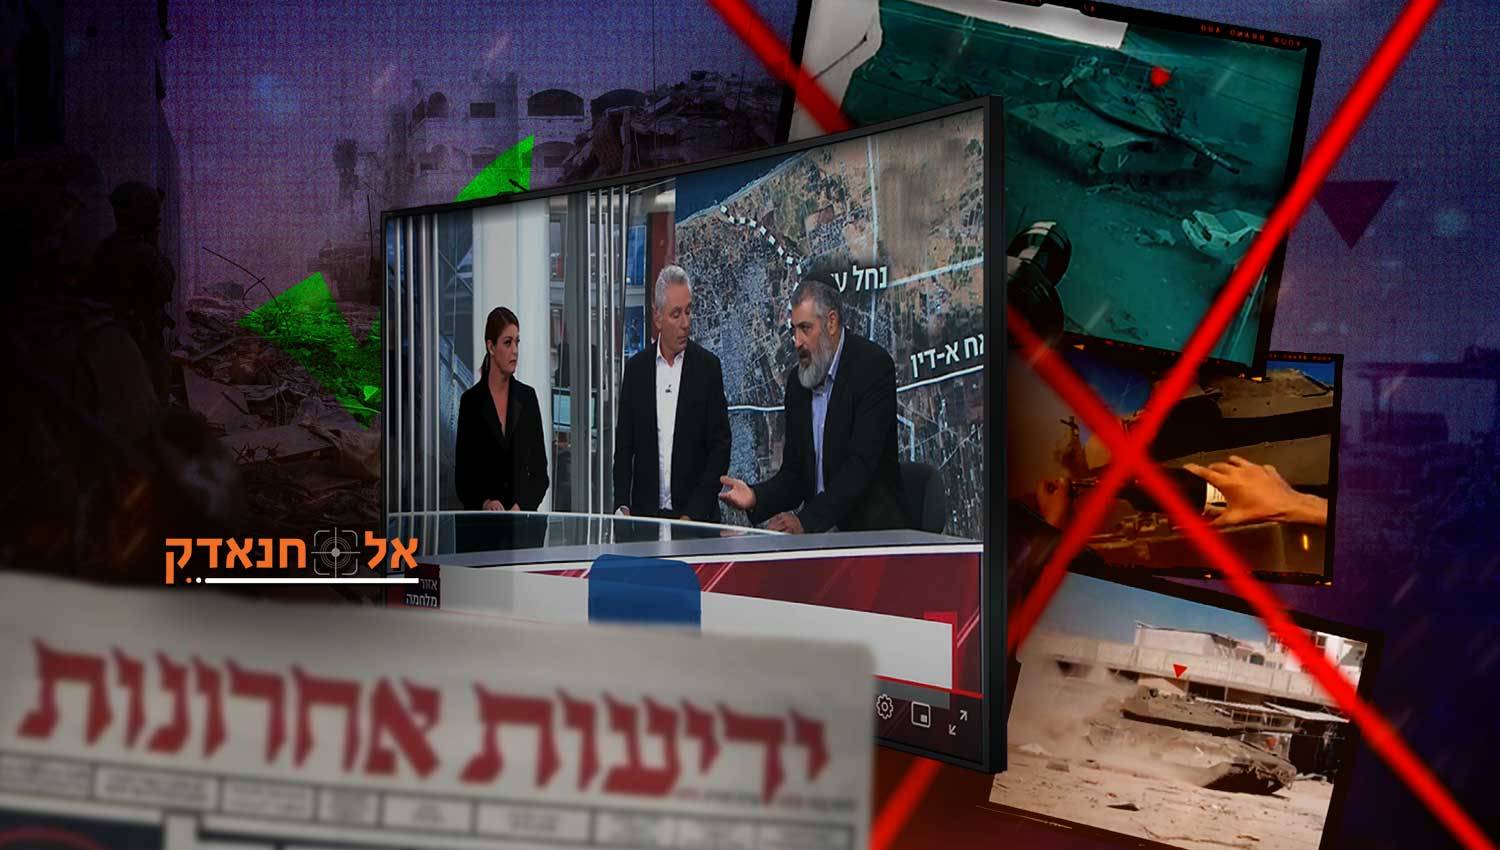 התקשורת הישראלית מנותקת מהמציאות